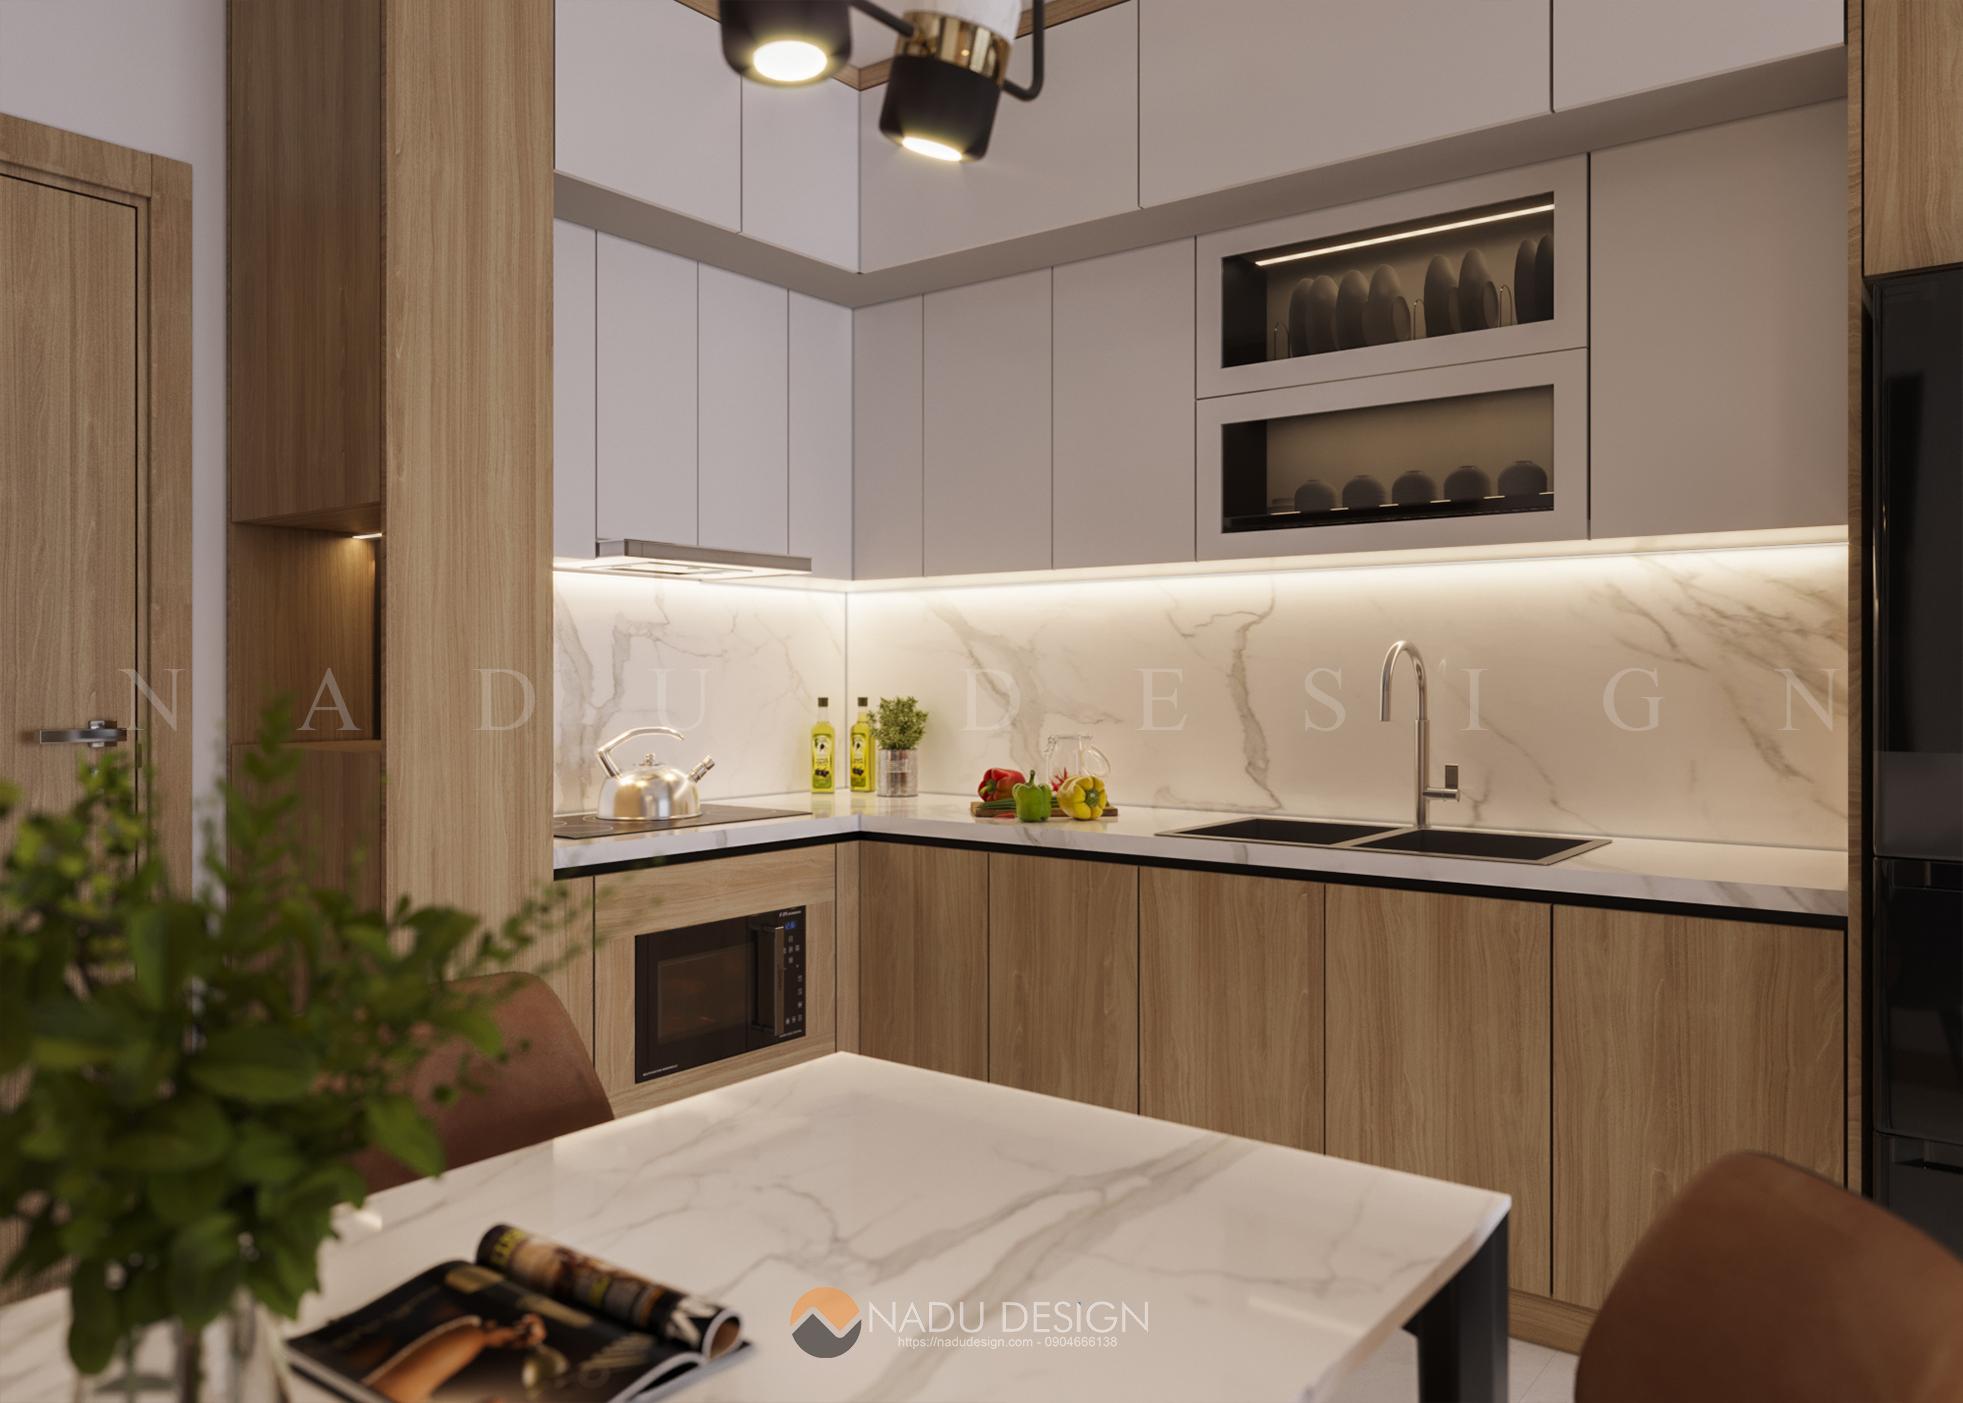 Design phòng bếp 10m2: Với thiết kế phòng bếp mới nhất, chúng tôi đưa ra hình thức cập nhật và độc đáo với nhiều tùy chọn màu sắc và chất liệu cho bạn lựa chọn. Bạn có thể tùy chỉnh kết cấu để phòng bếp 10m2 theo phong cách riêng của mình. Hãy xem hình ảnh để tìm thiết kế phù hợp với sở thích của bạn.